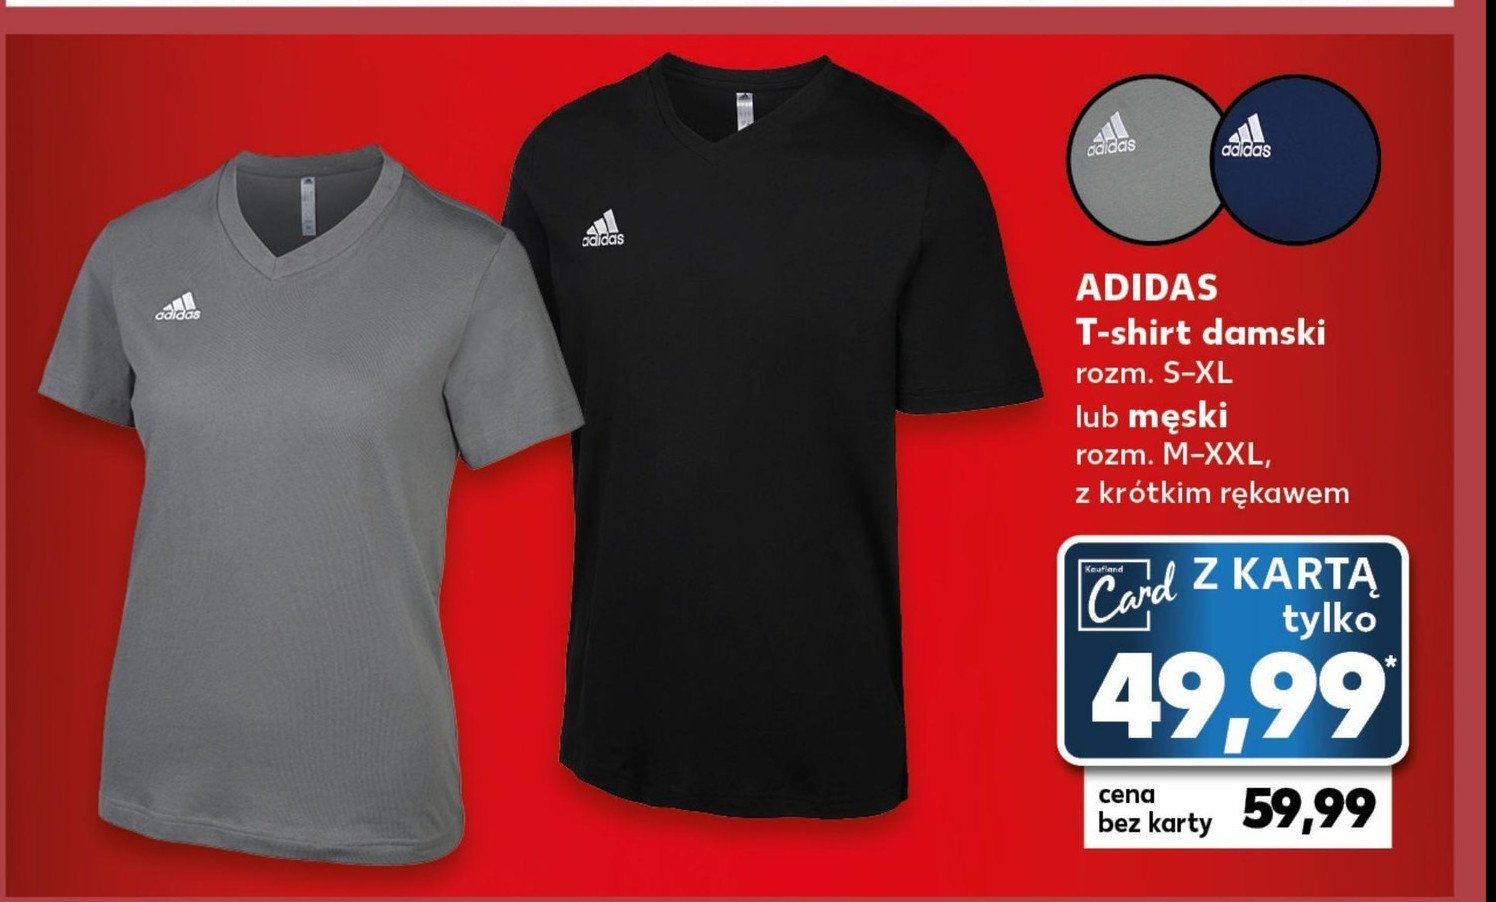 T-shirt męski rozm. m-xxl Adidas promocja